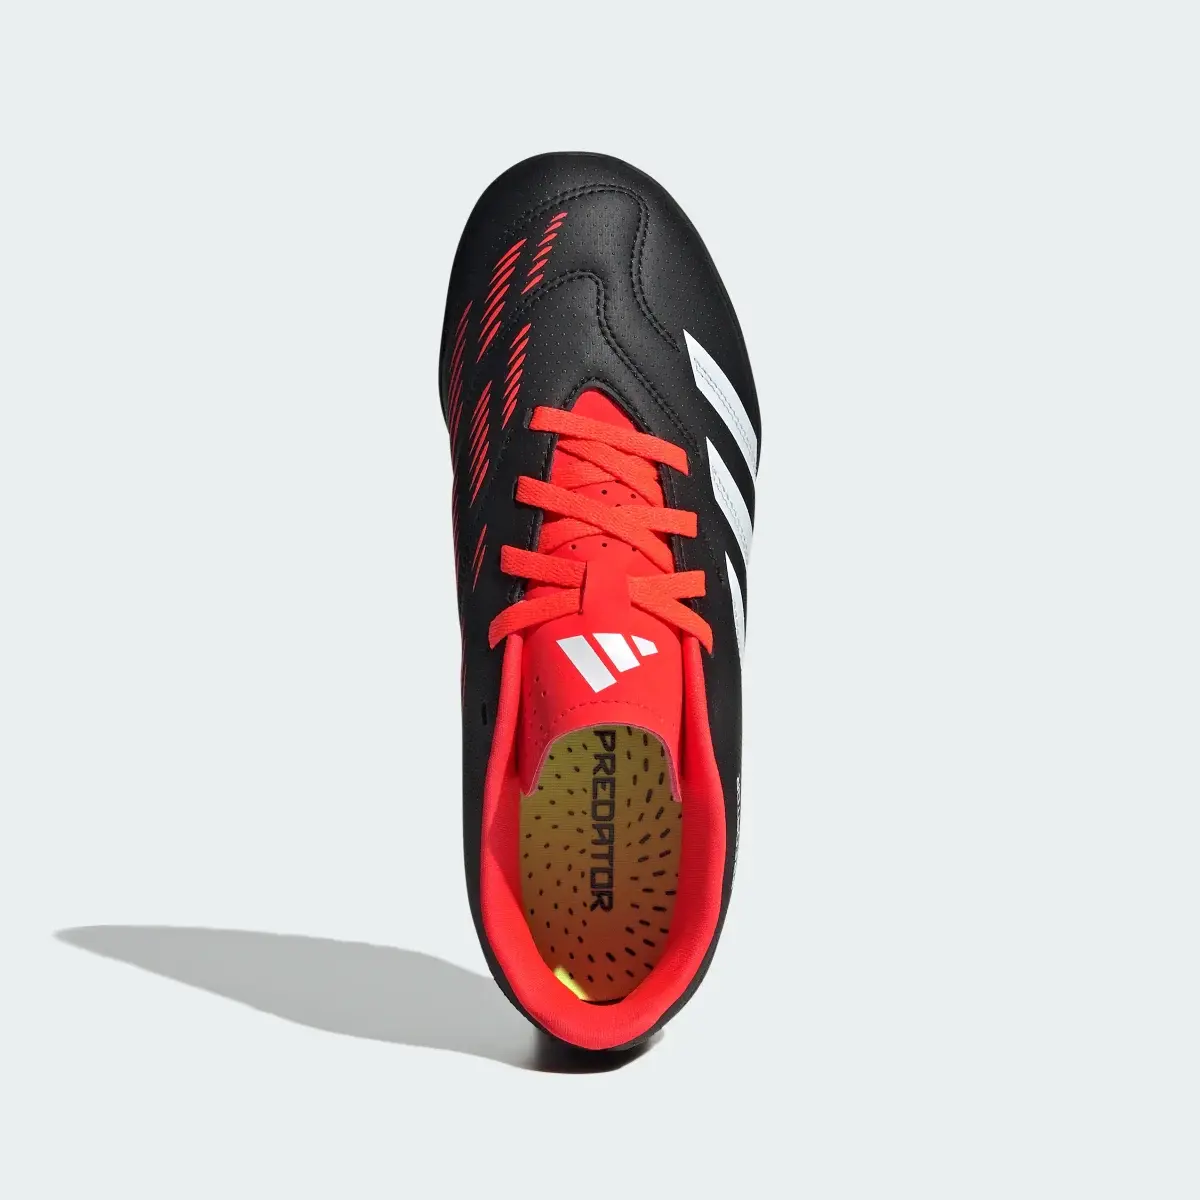 Adidas Predator Club Turf Football Boots. 3